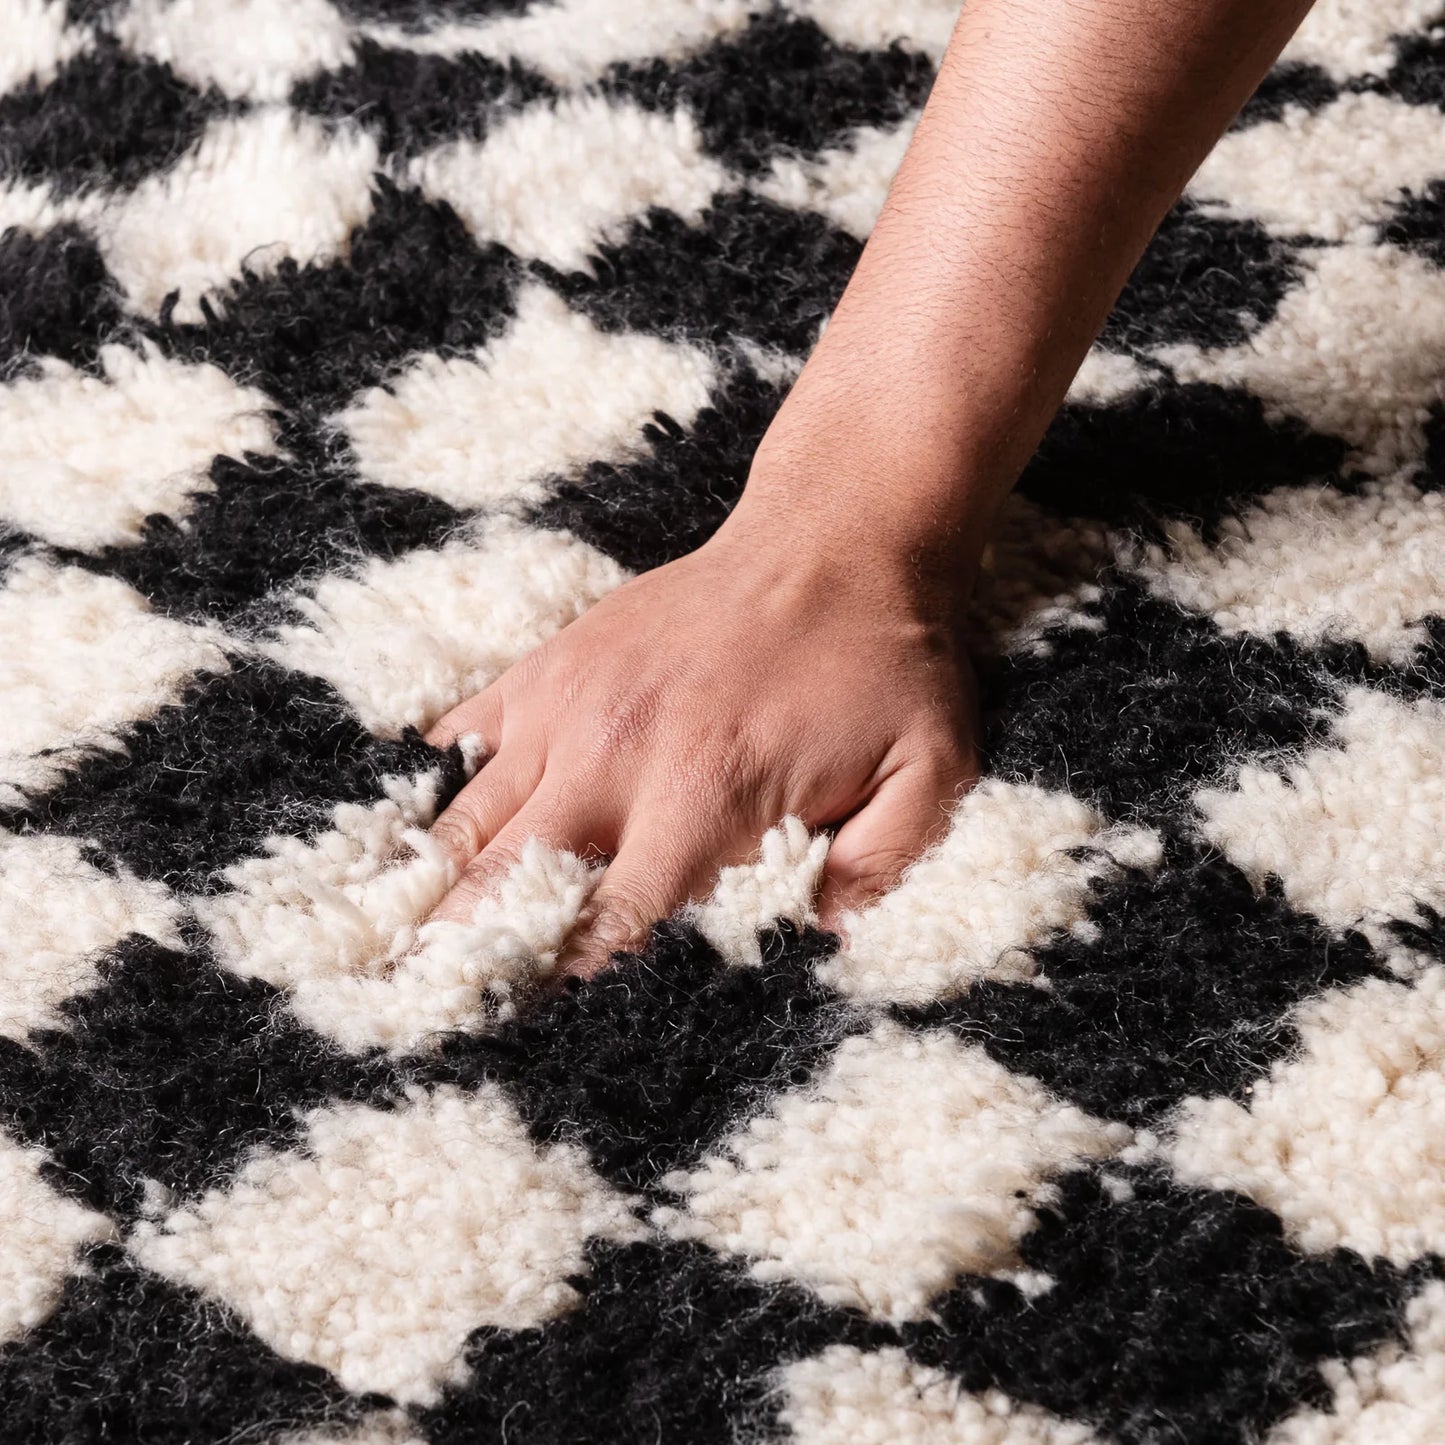 Casablanca Checkered - Tapis en laine tissé à la main - Élégance intemporelle - Plusieurs tailles